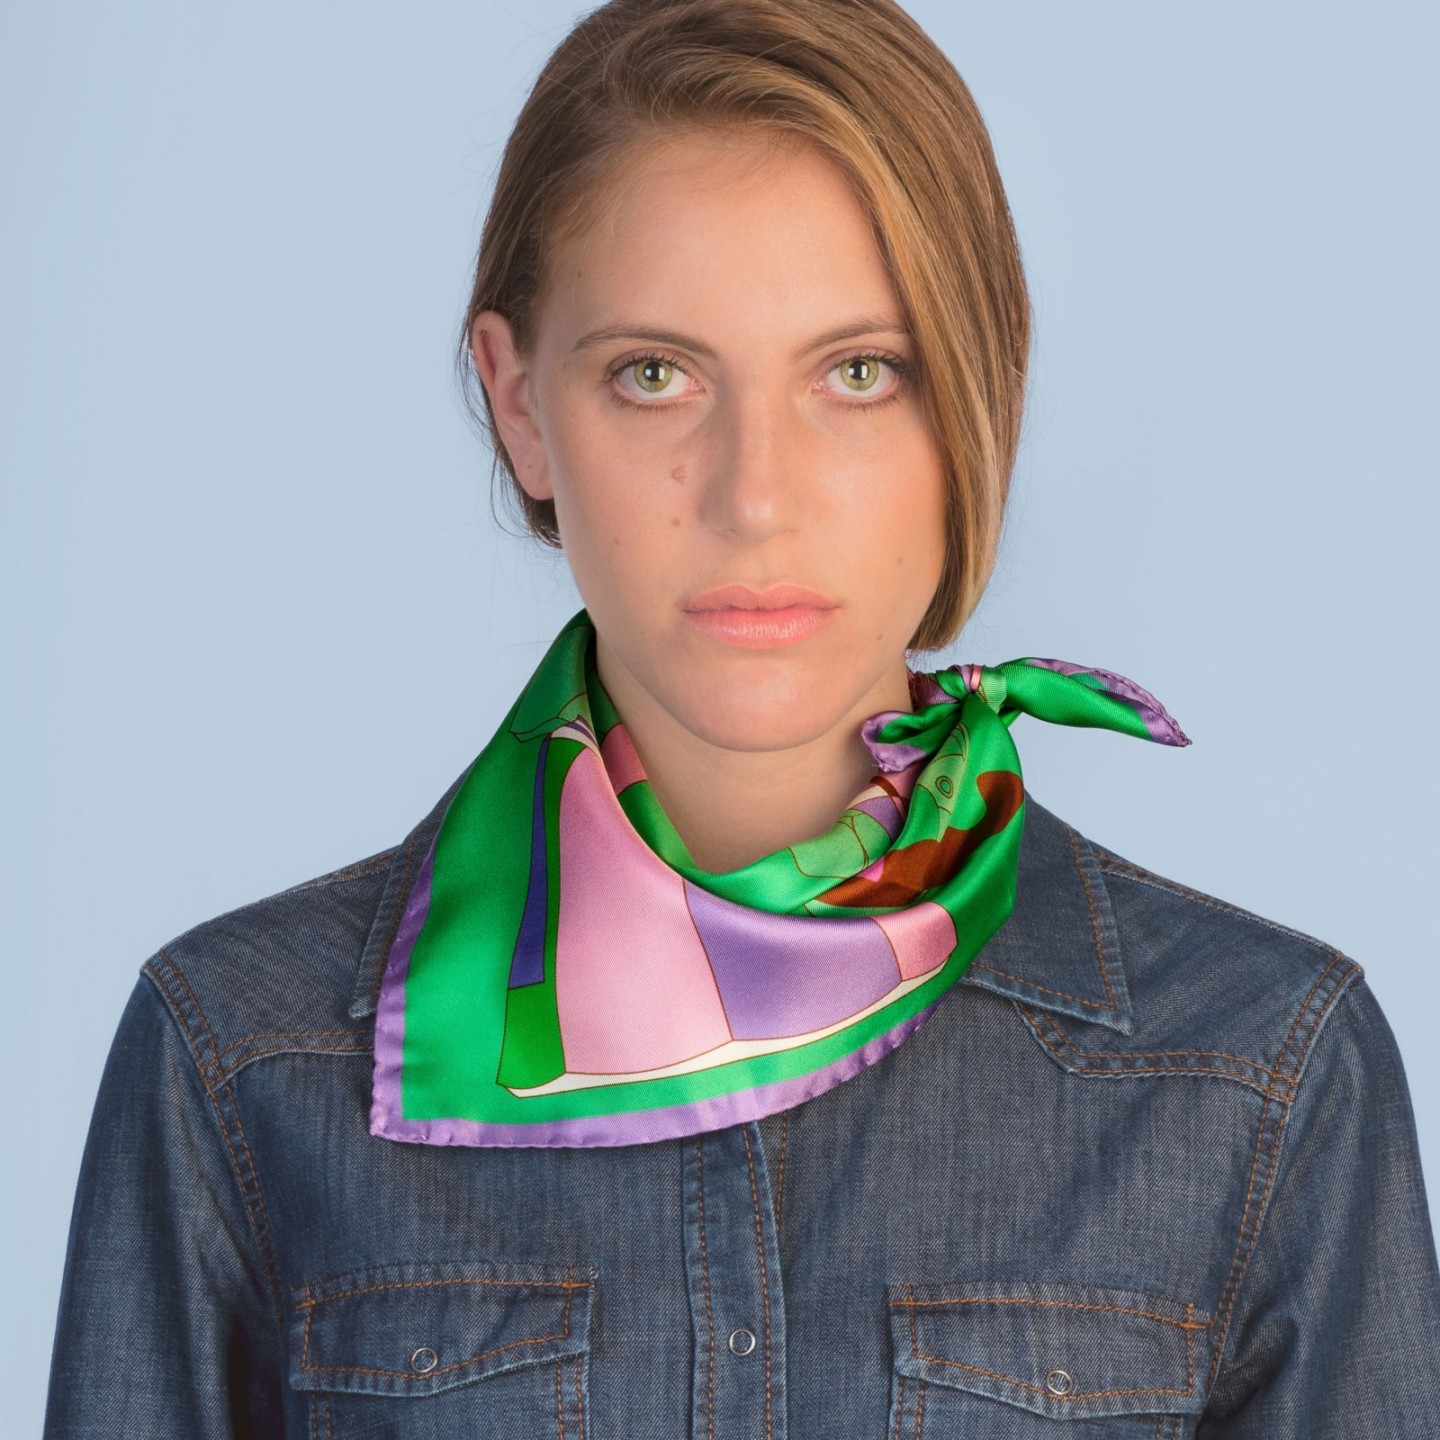 Acquista il piccolo foulard di Seta Editions Ventinove 50x50 cm!